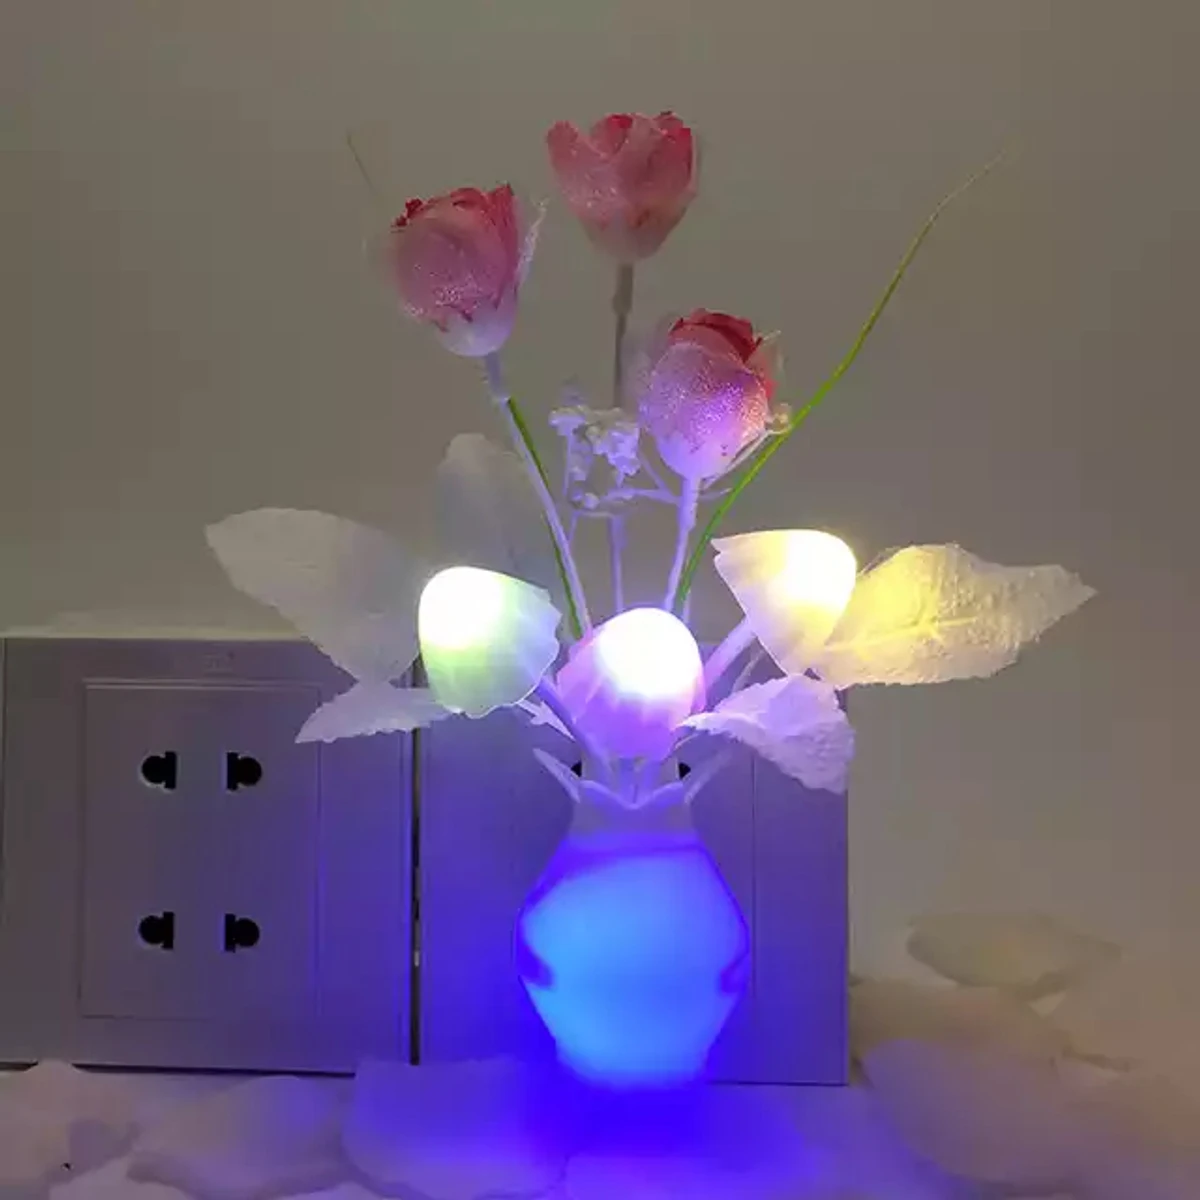 Automatic LED Sensor Mushroom Lamp both side light Multi-Color (2Pcs)